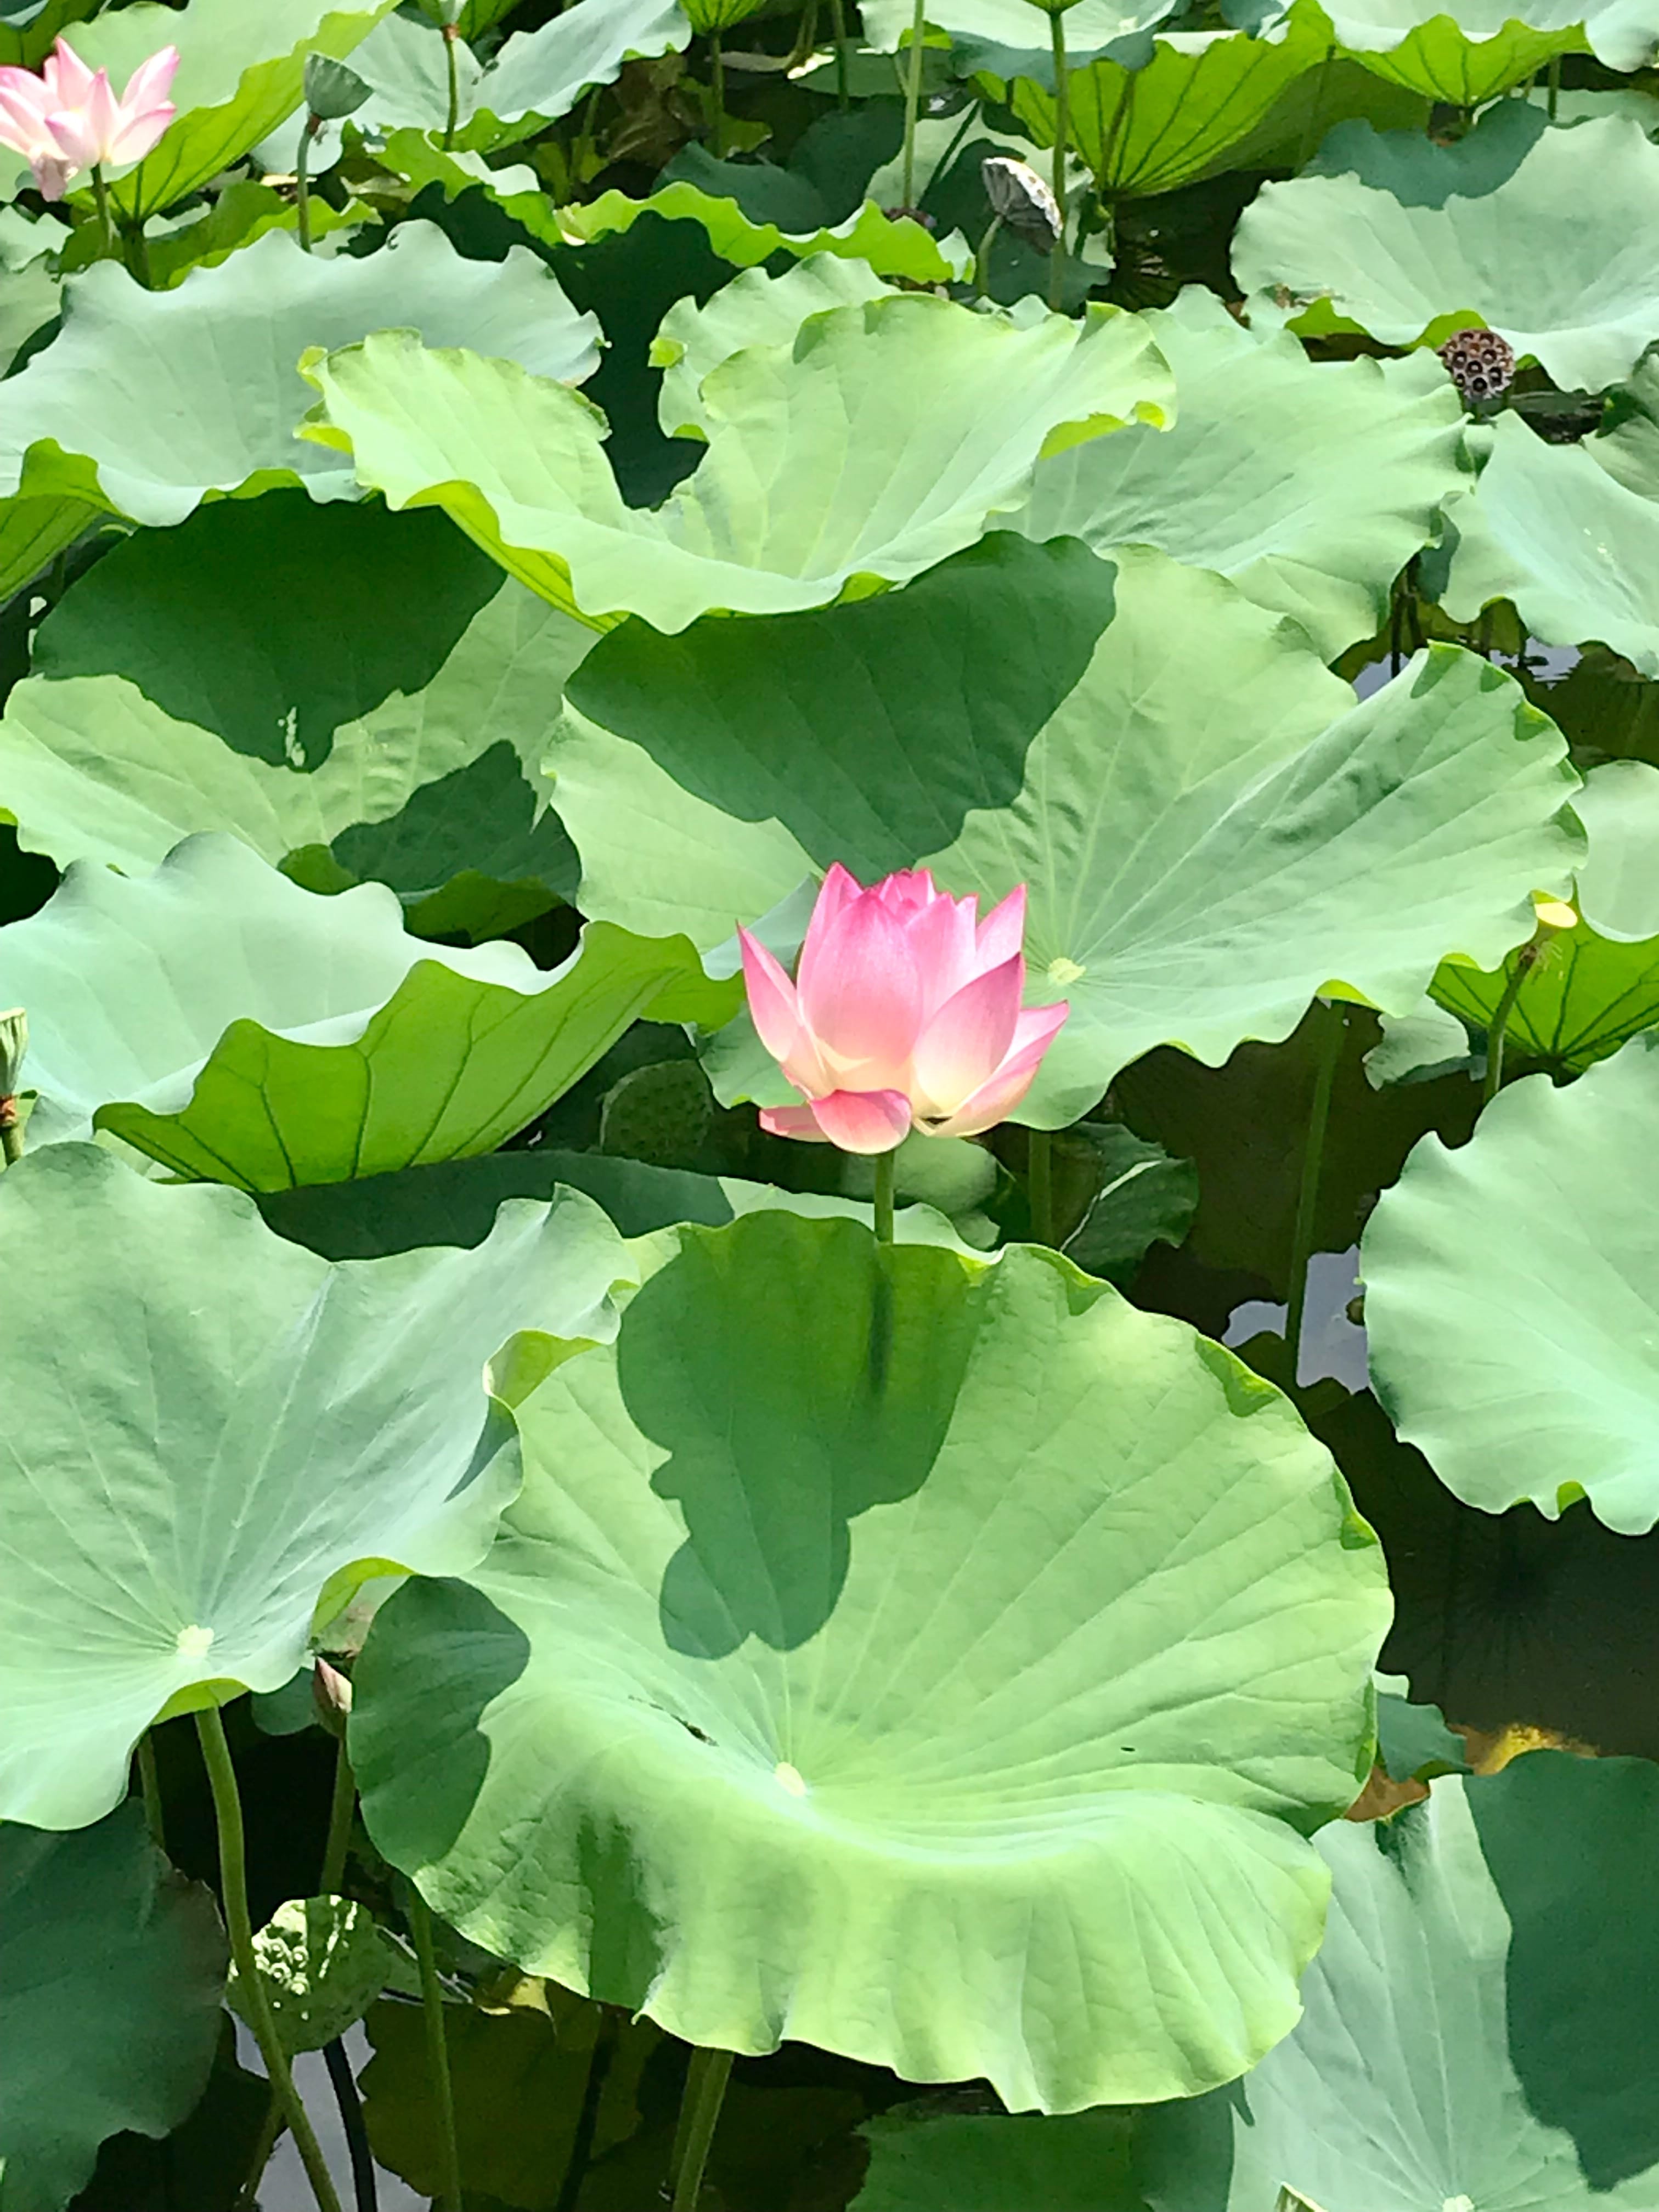 Lotus Flower in full bloom